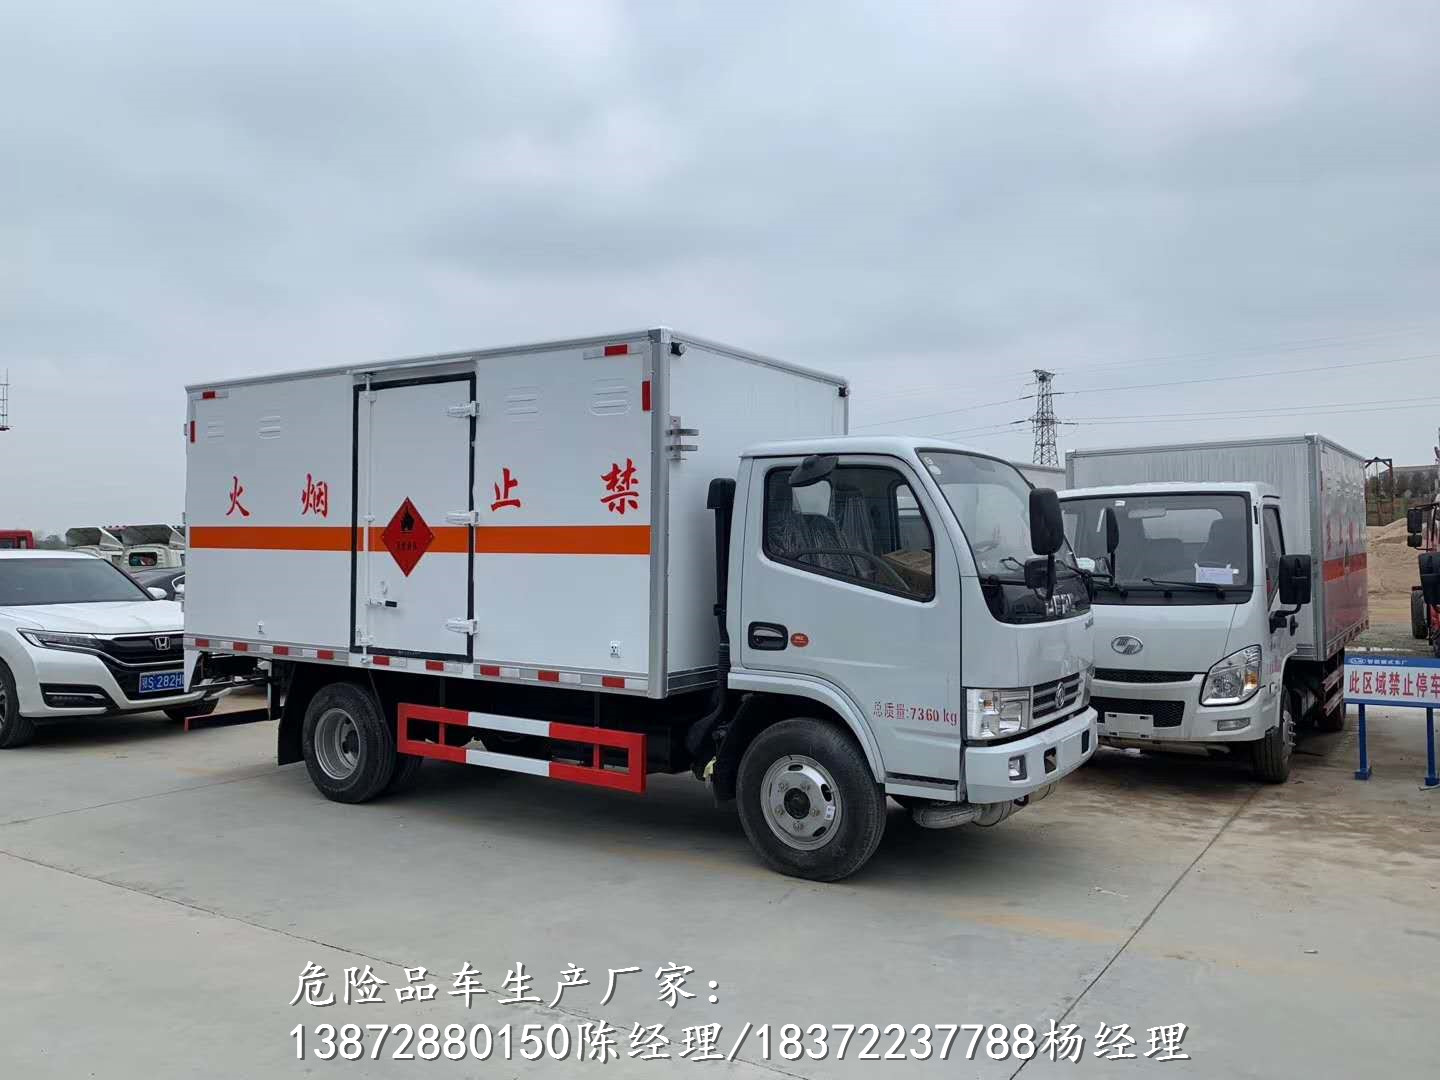 丽江天锦国六6.1米危货车详细配置参数危险品车